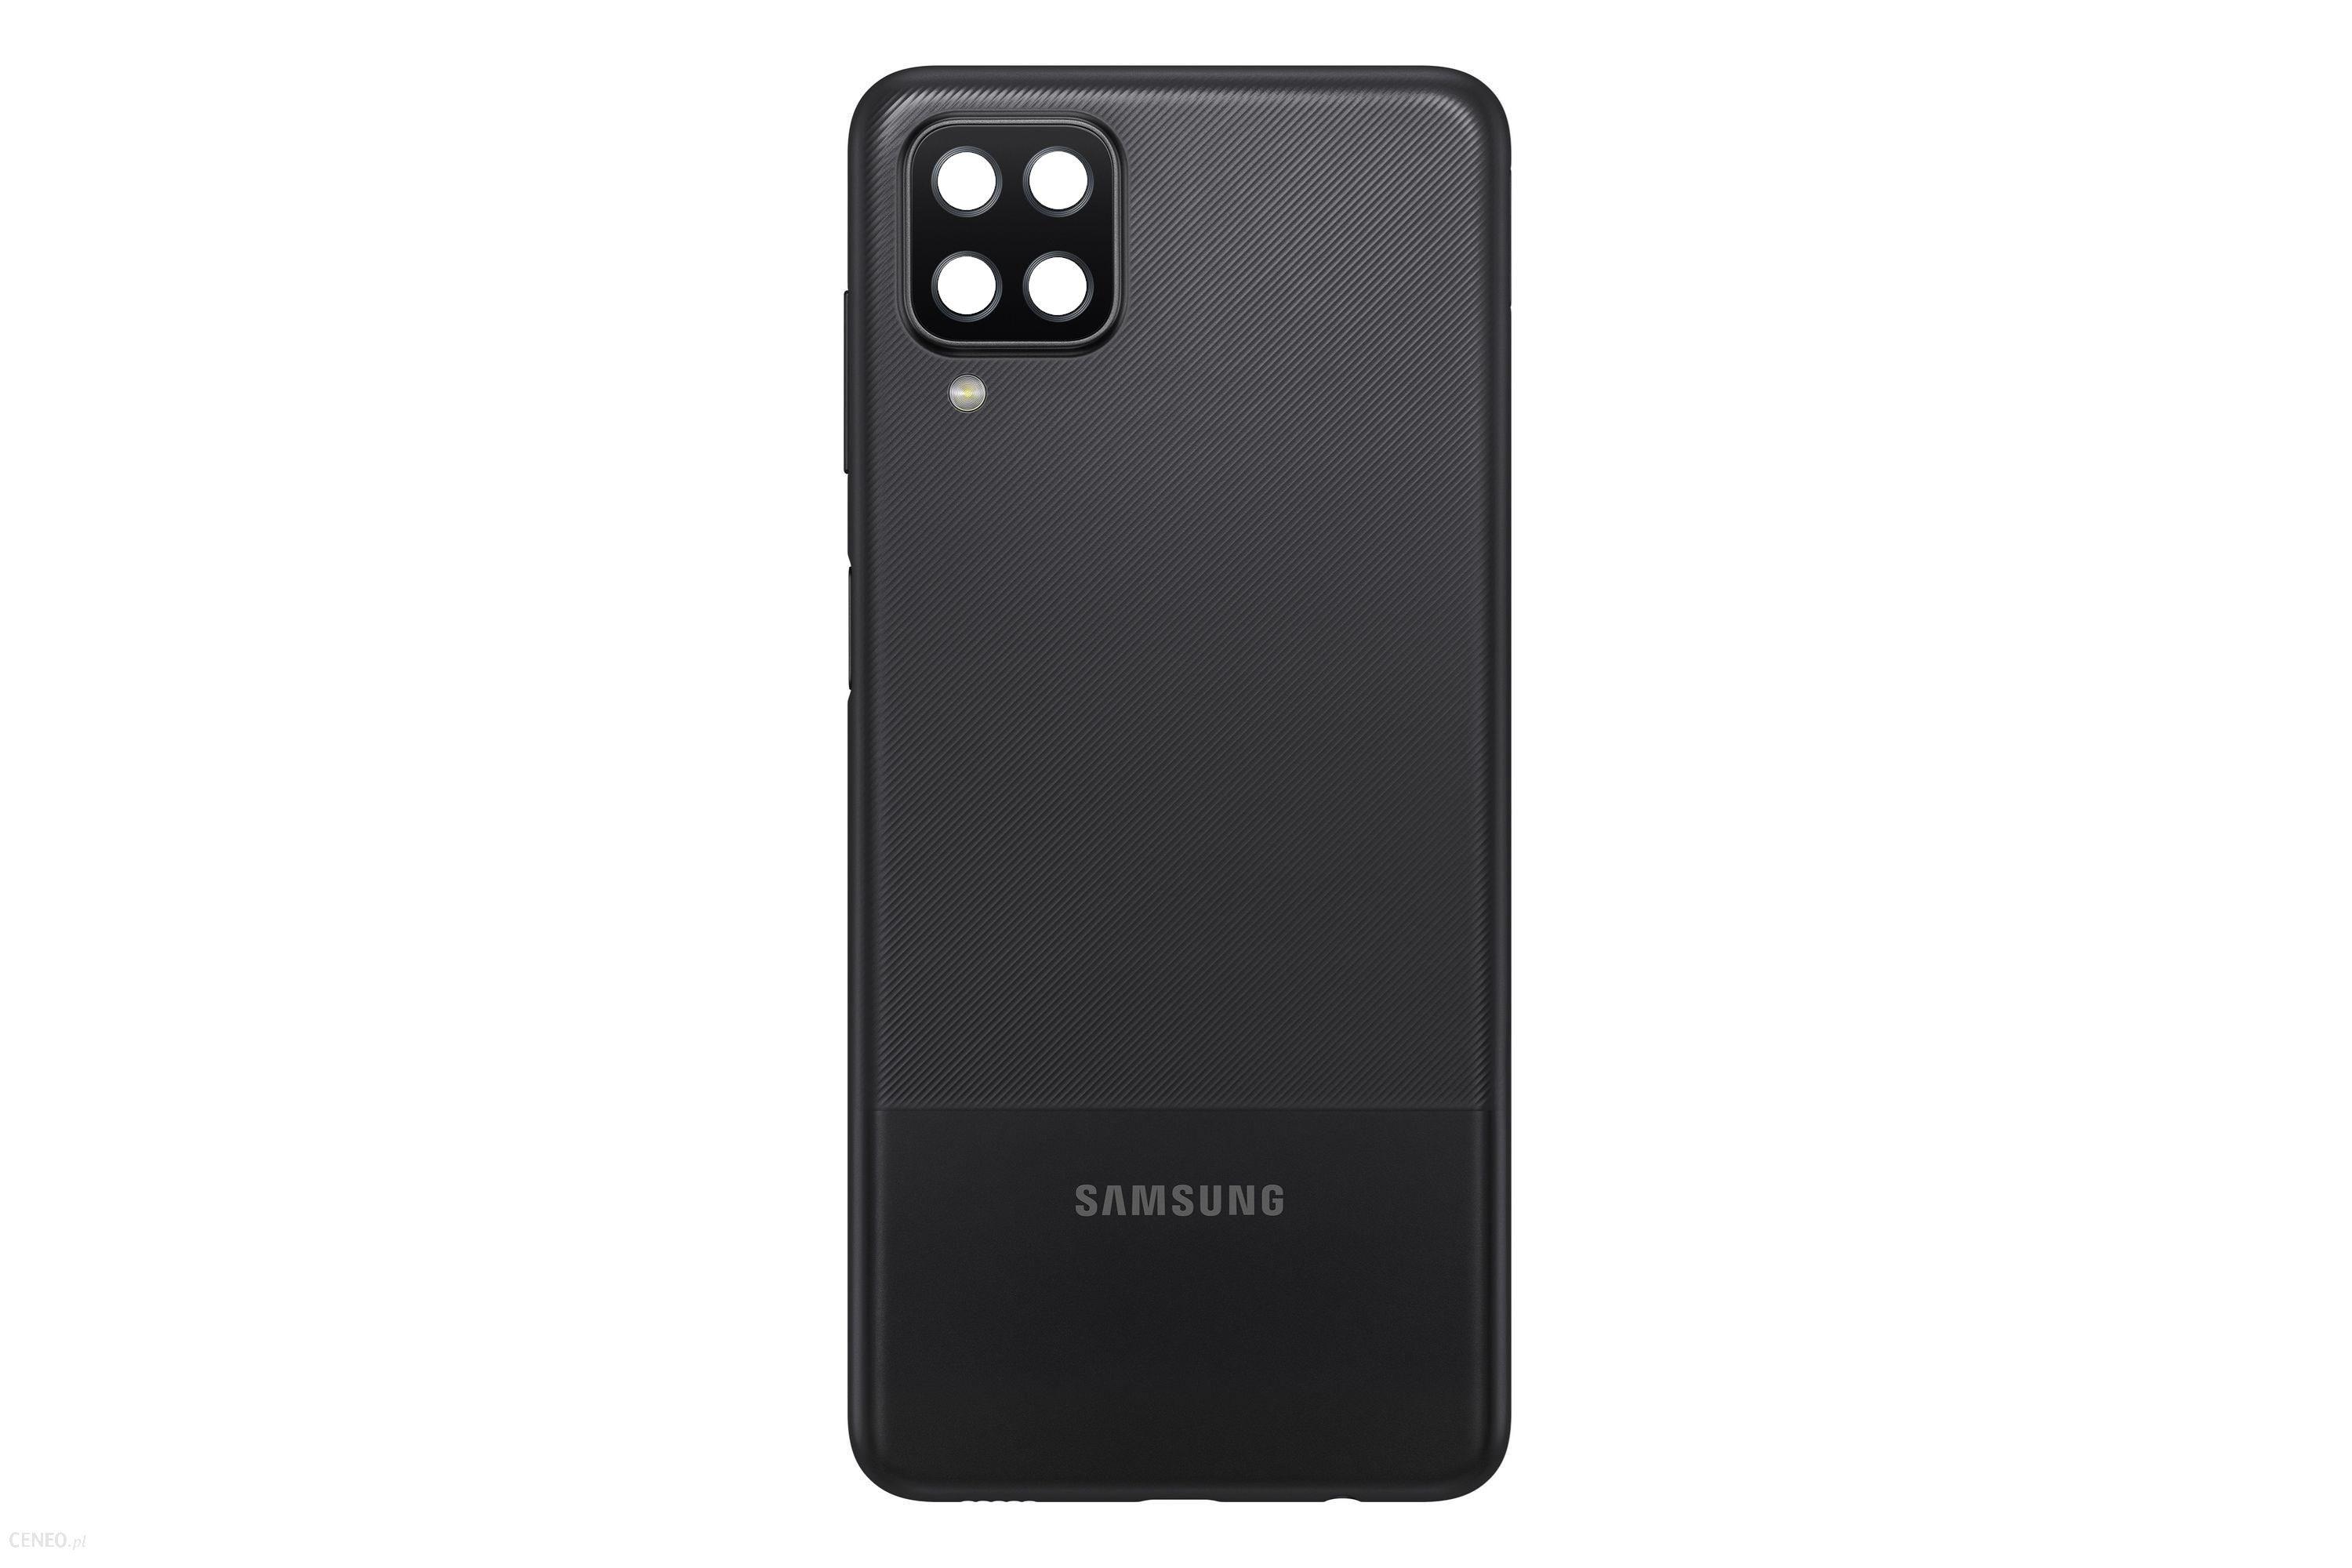 Originál kryt baterie Samsung Galaxy A12 SM-A125 černý